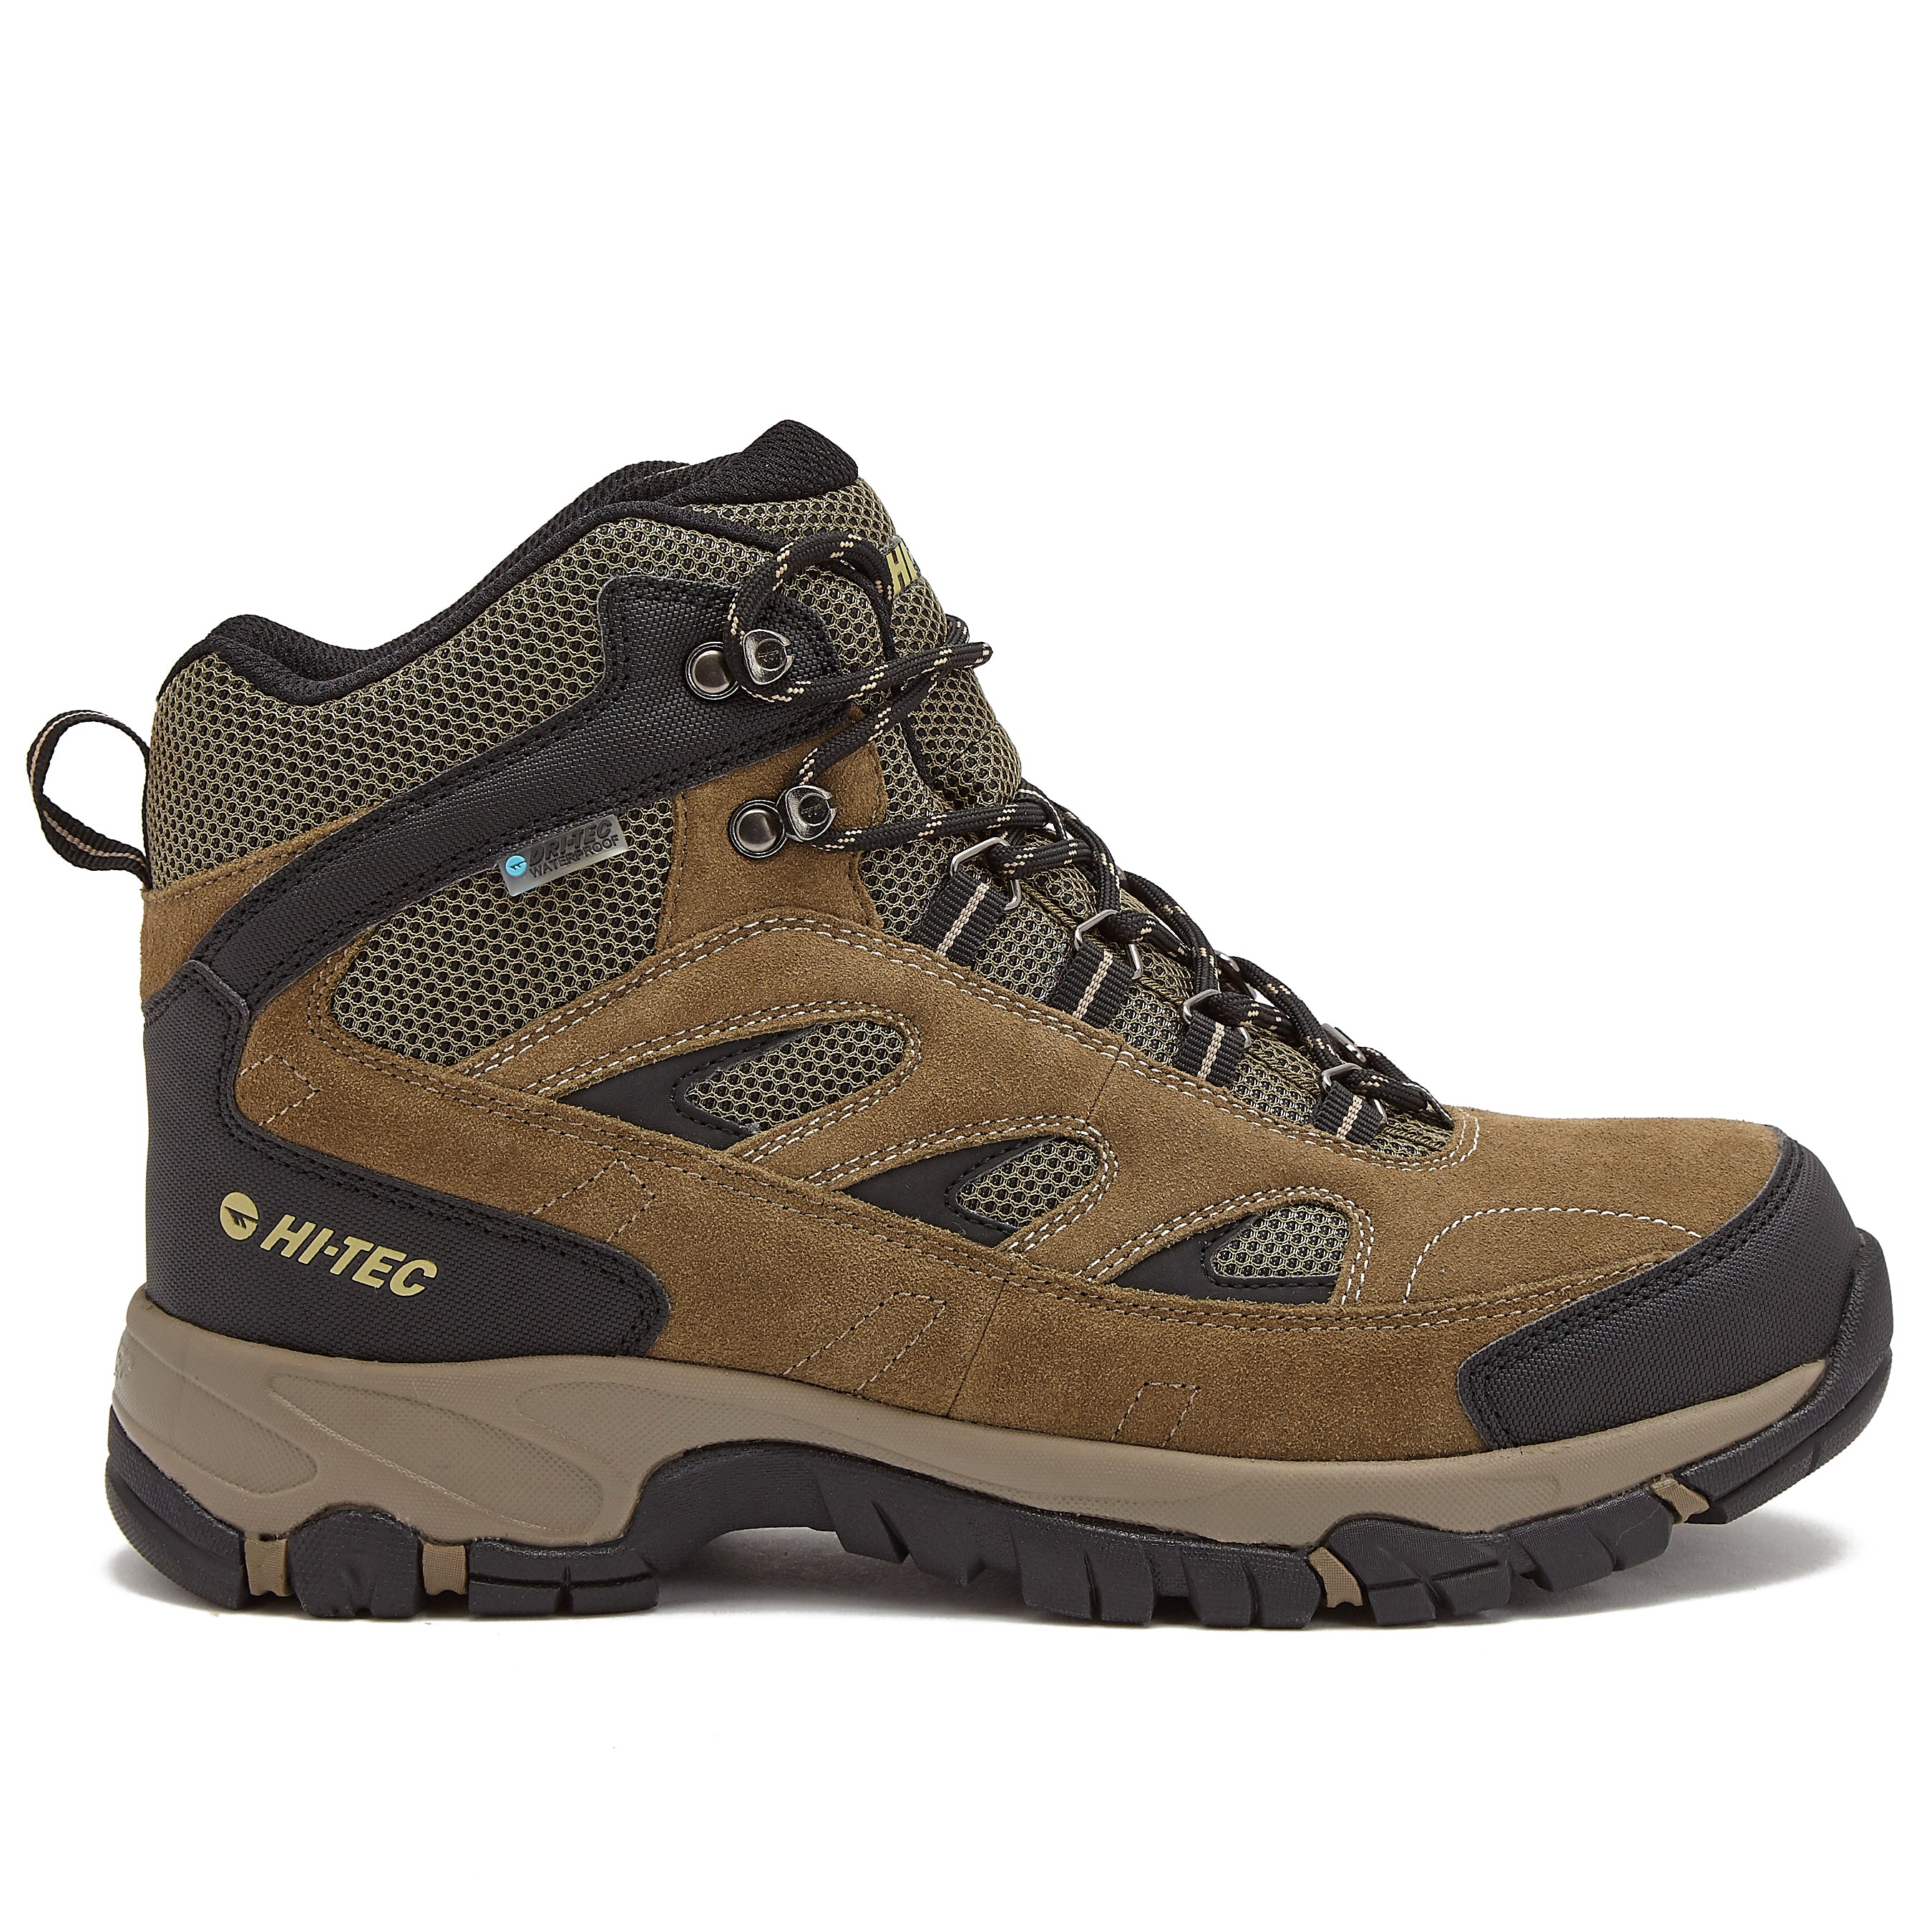 HI-TEC Yosemite Mid Waterproof Hiking Boots for Men